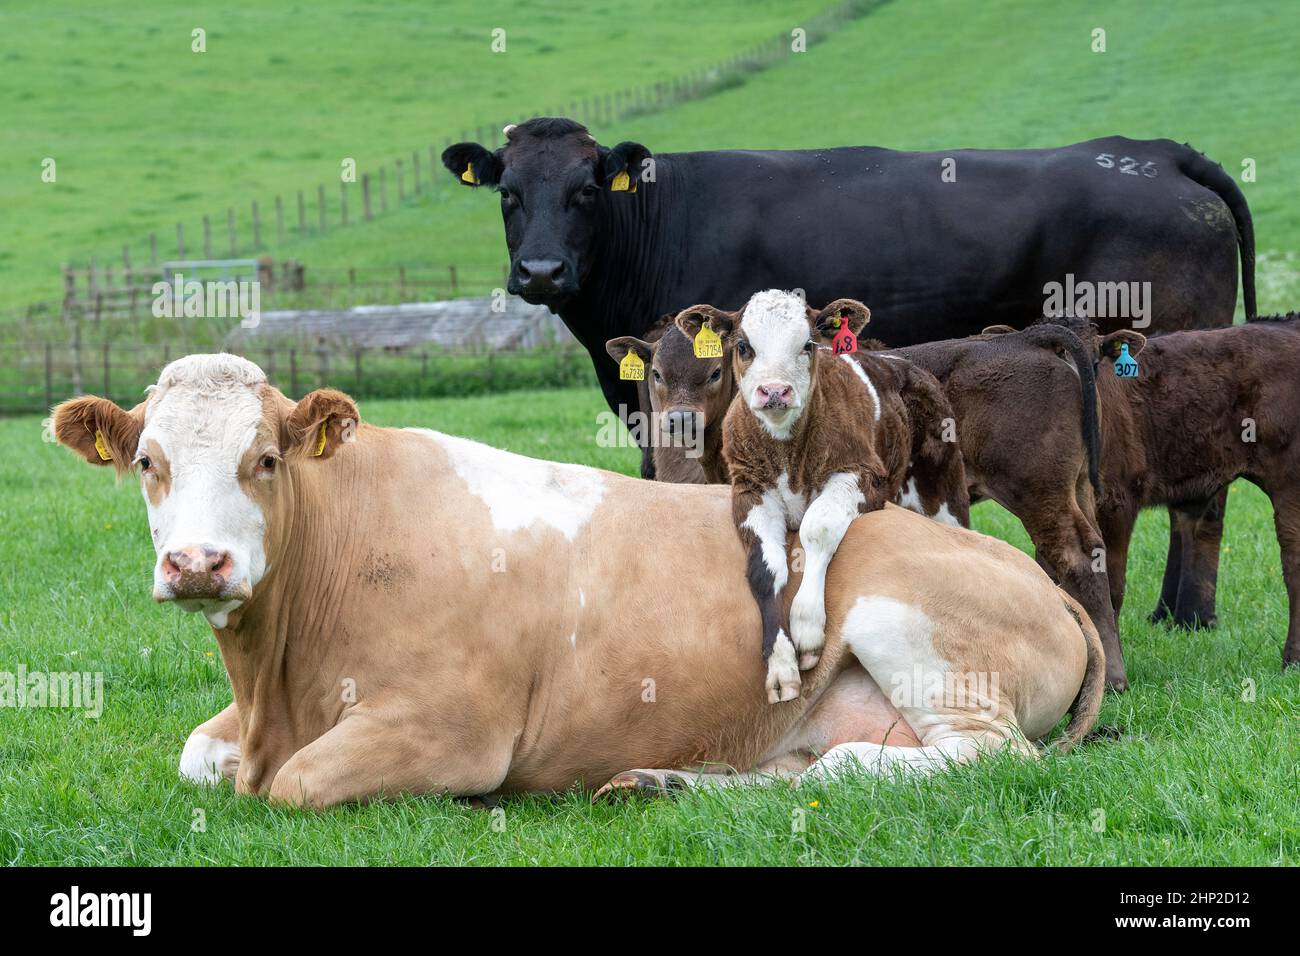 La vaca se sentó con la pantorrilla puesta sobre su espalda mirando muy relajado, Lockerbie, Reino Unido. Foto de stock